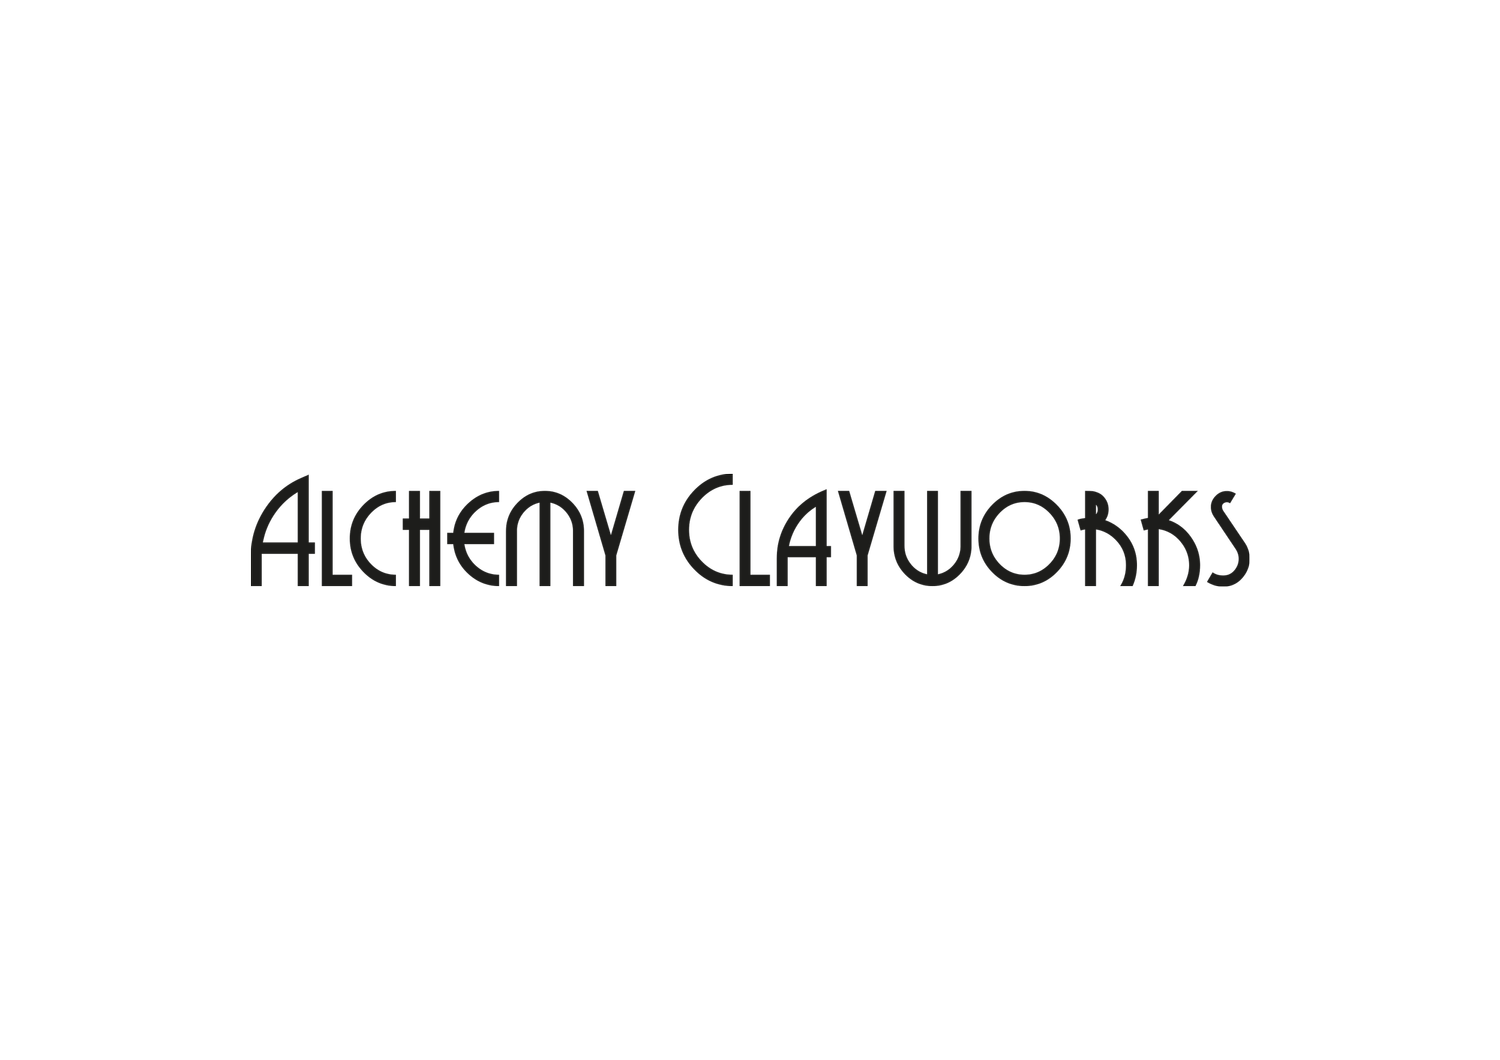 Alchemy Clayworks